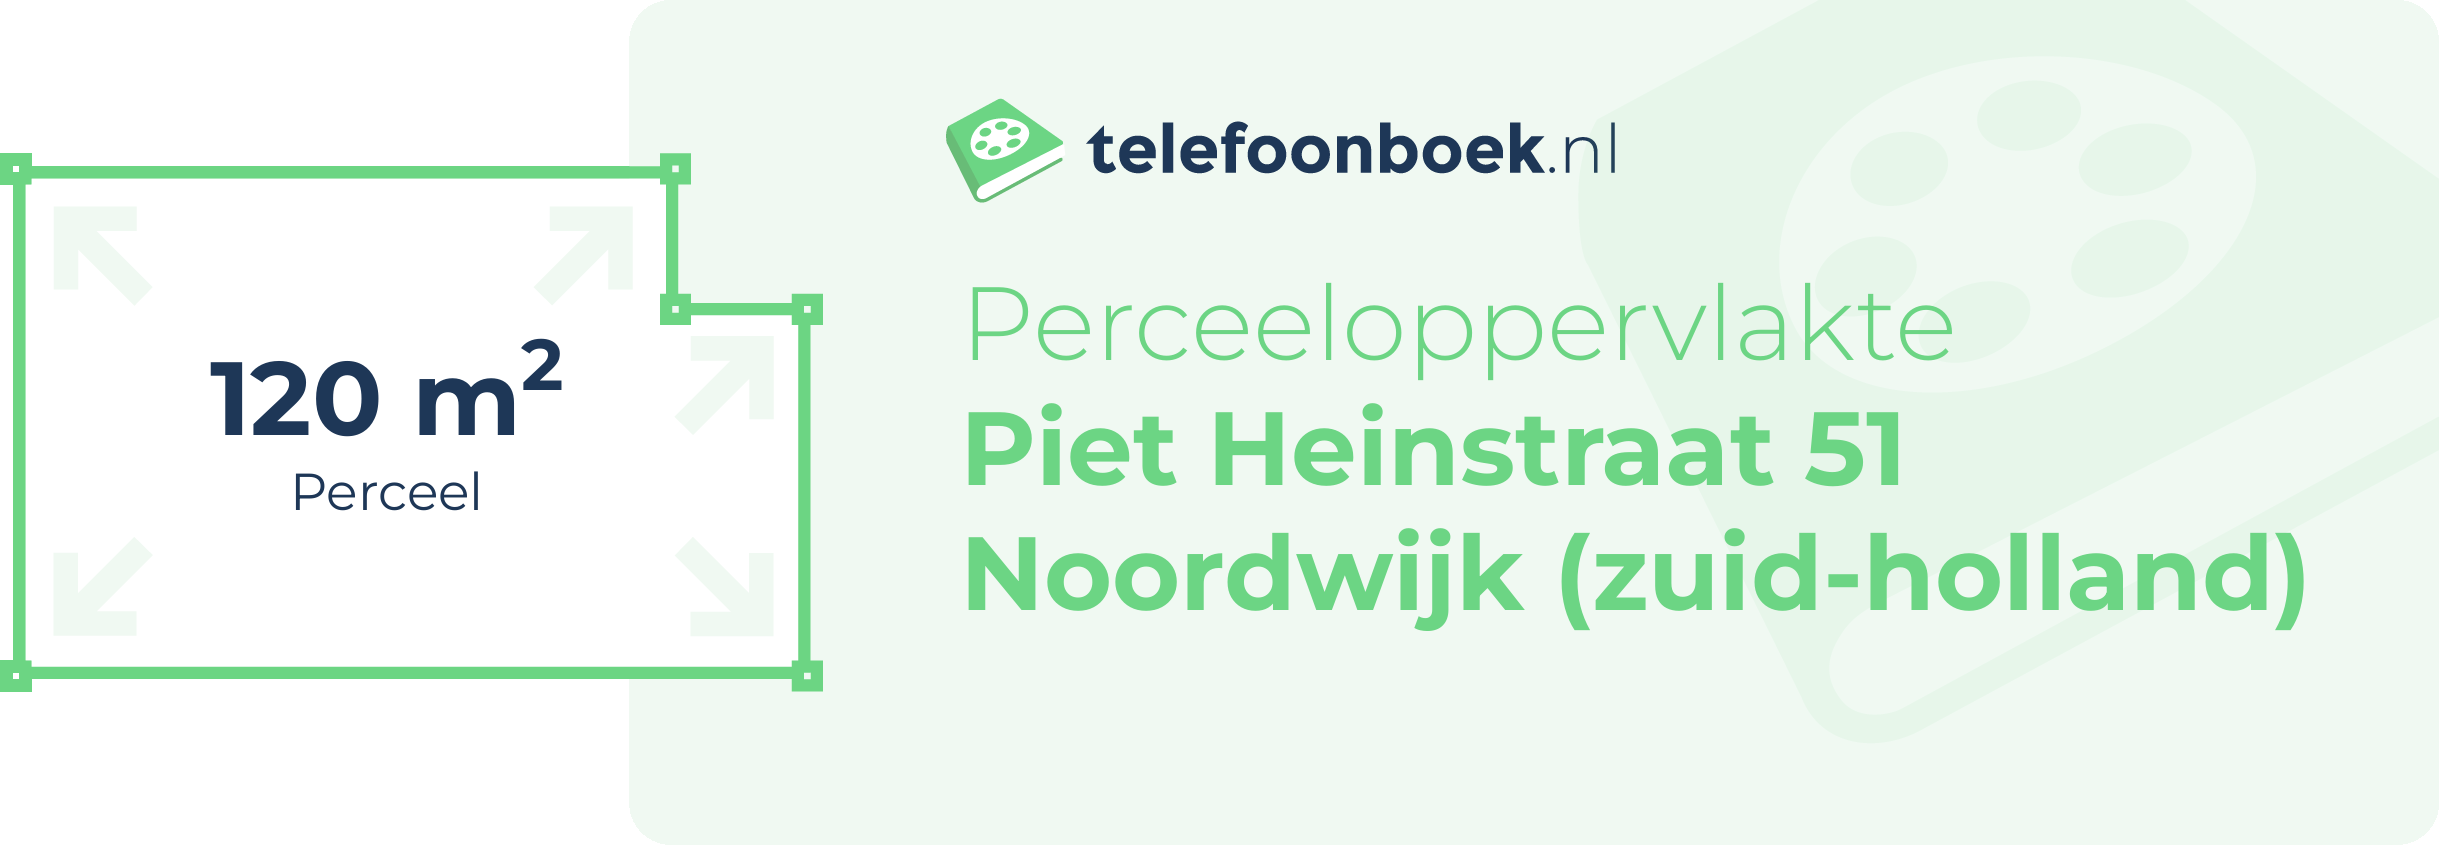 Perceeloppervlakte Piet Heinstraat 51 Noordwijk (Zuid-Holland)